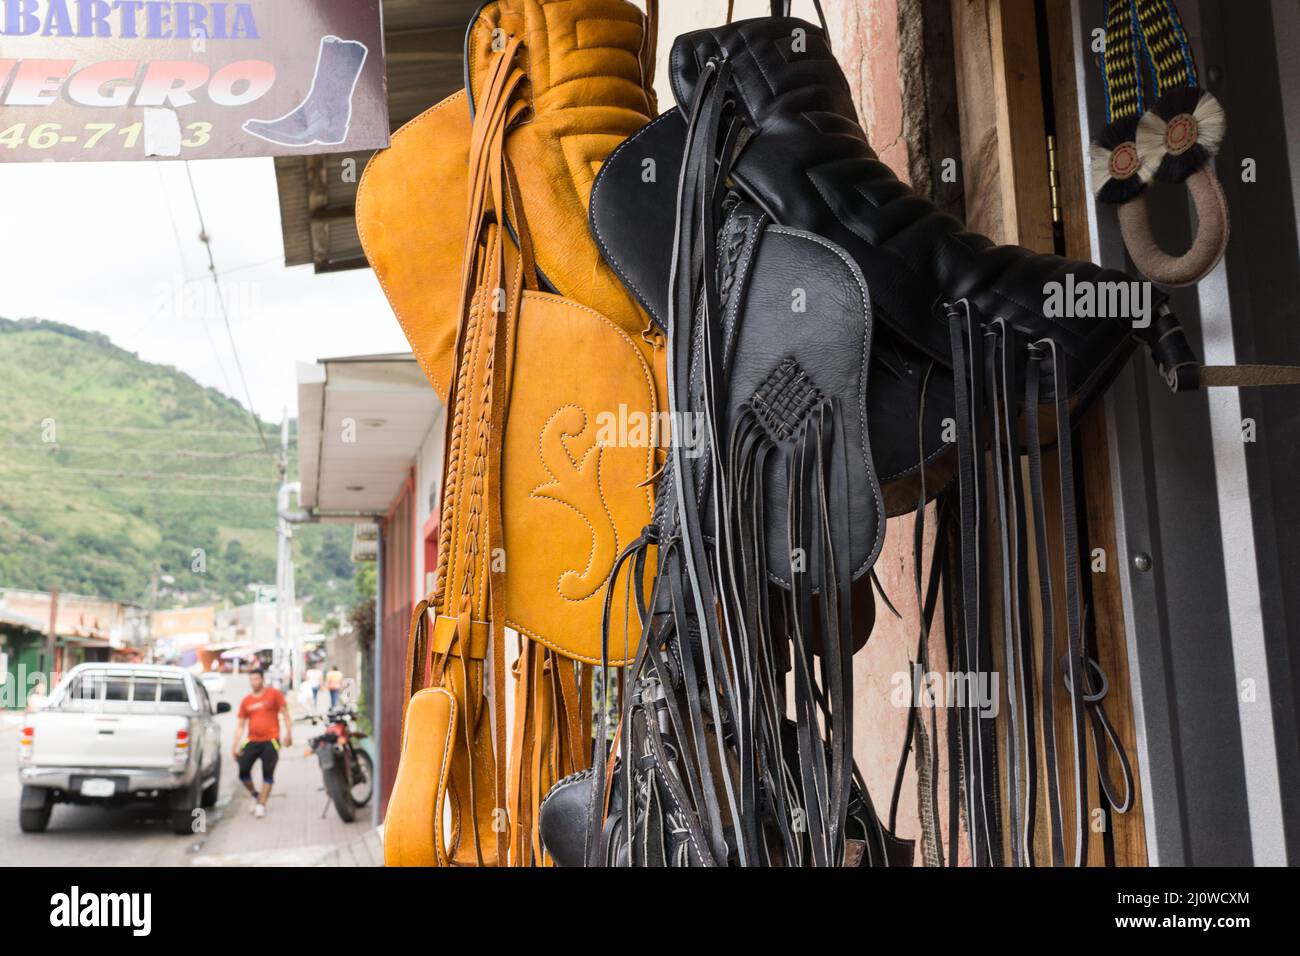 Vor einem Lederhandwerk in Jinotega, Nicaragua, hängen Sättel im zentralamerikanischen Stil. Stockfoto